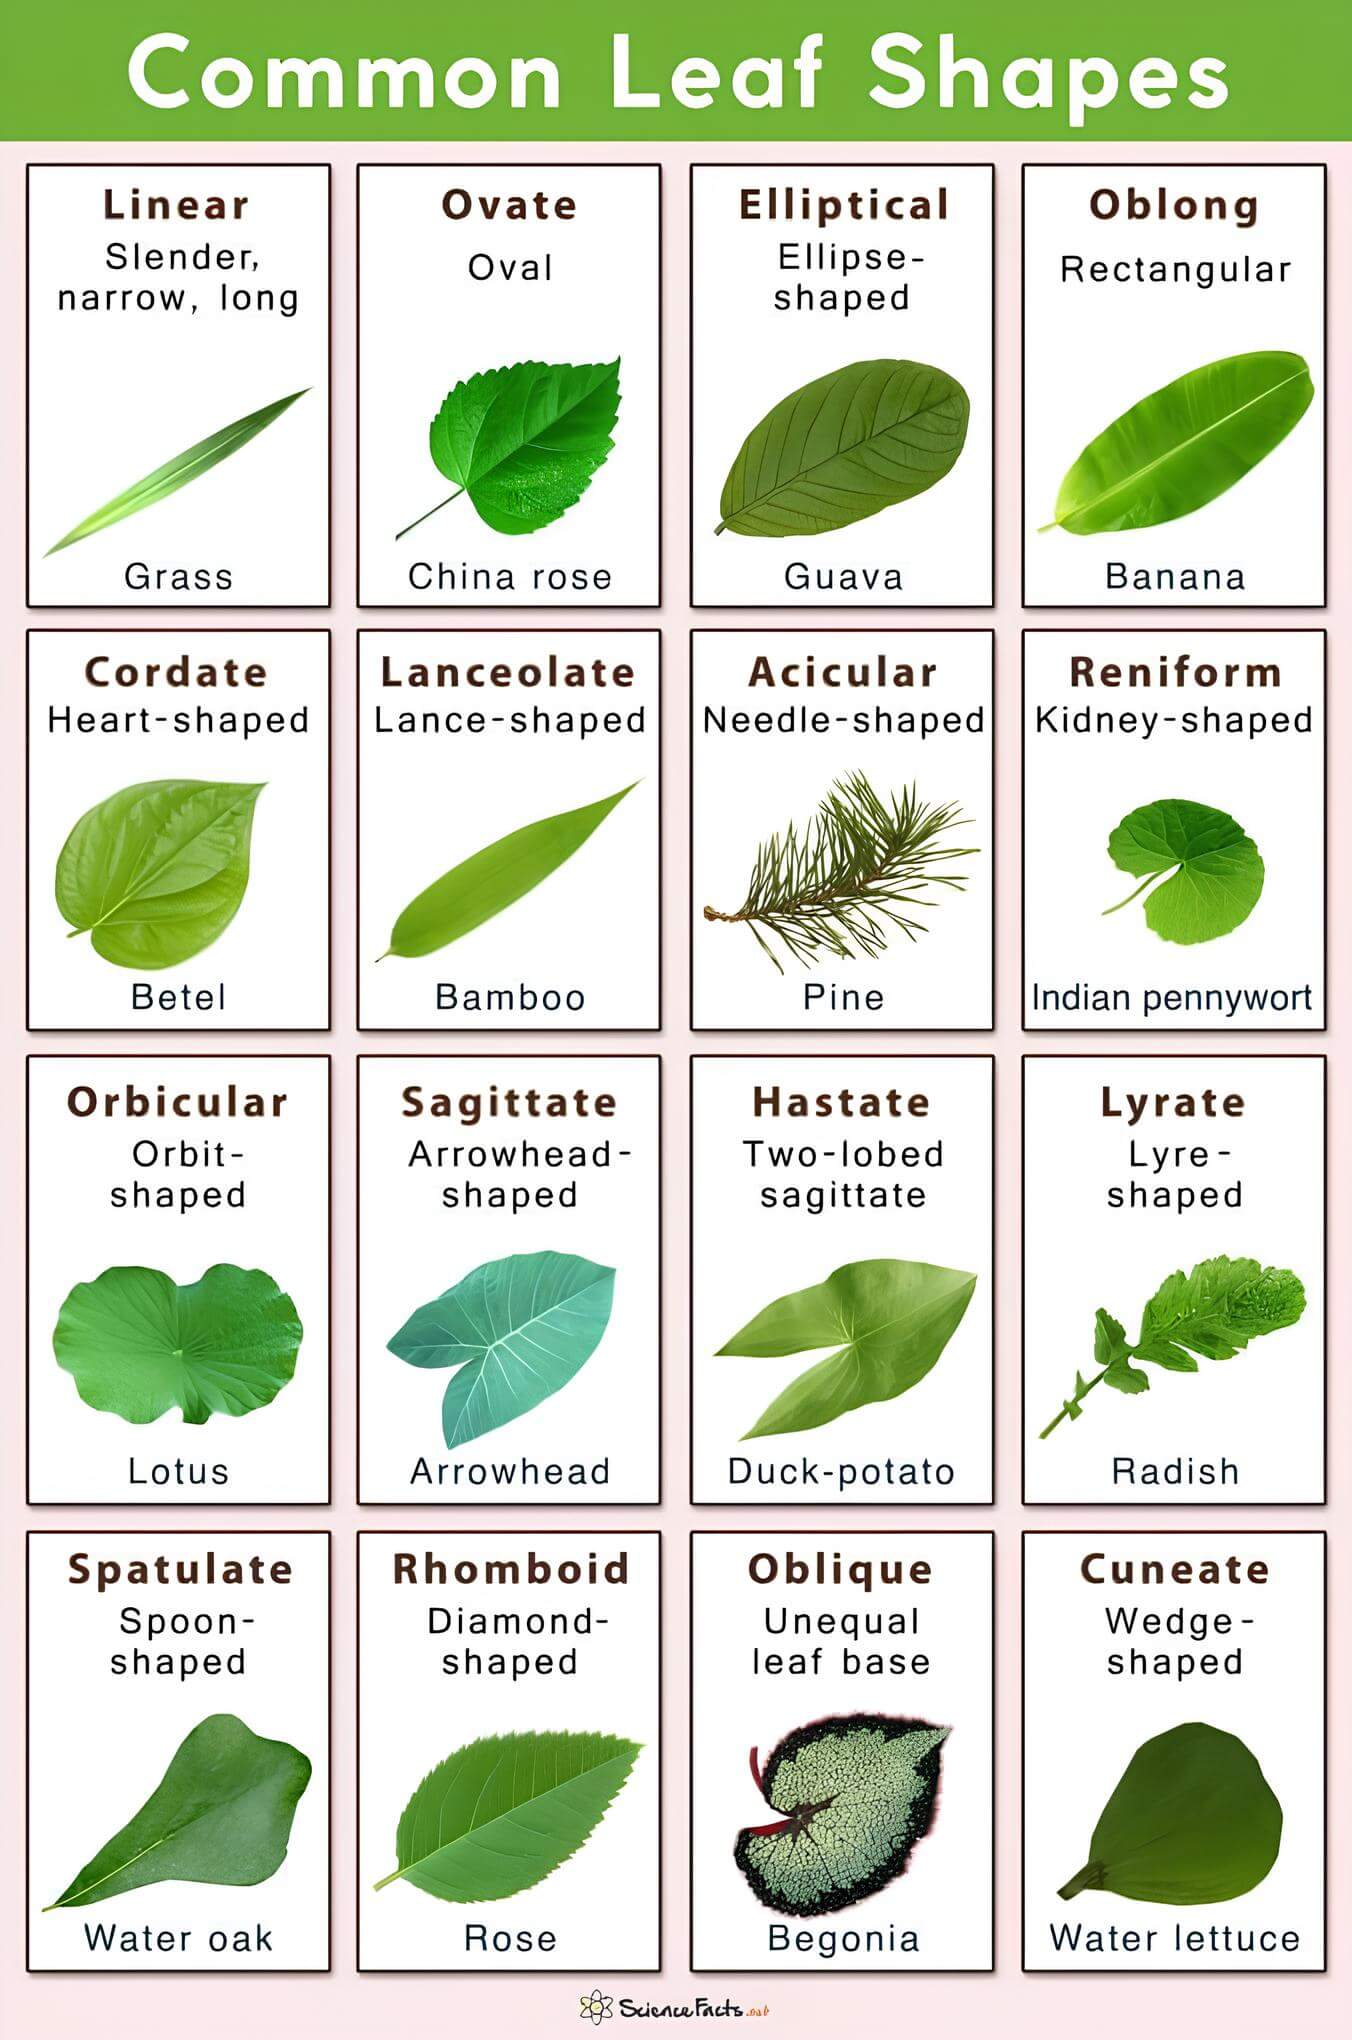 Tree Leaf Identification Based on Shapes